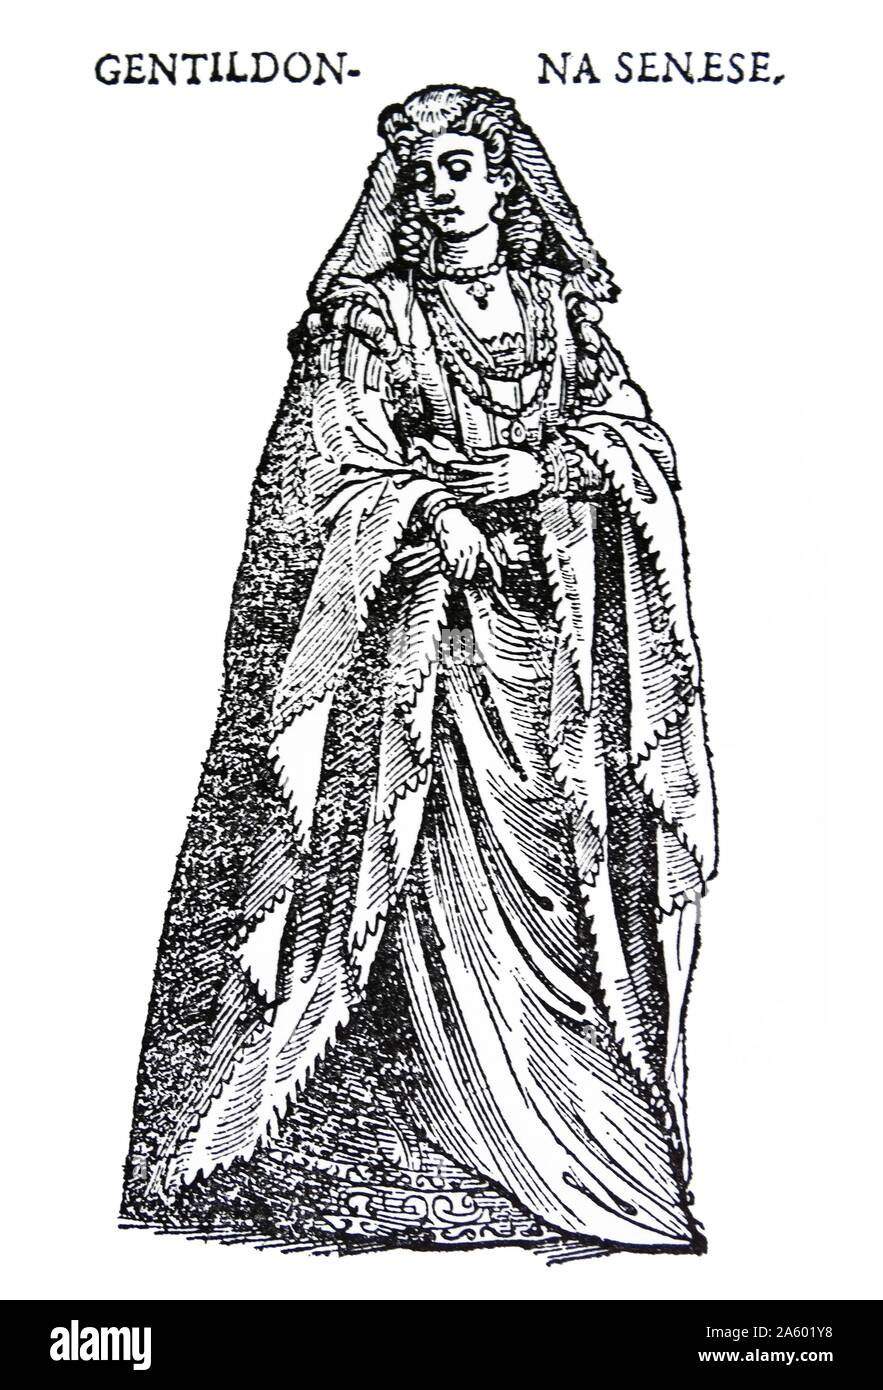 Incisione raffigurante il costume di una gentildonna senese da parte di Cesare Vecellio (1530-1601) un incisore italiano e pittore del Rinascimento. Datata XVI Secolo Foto Stock